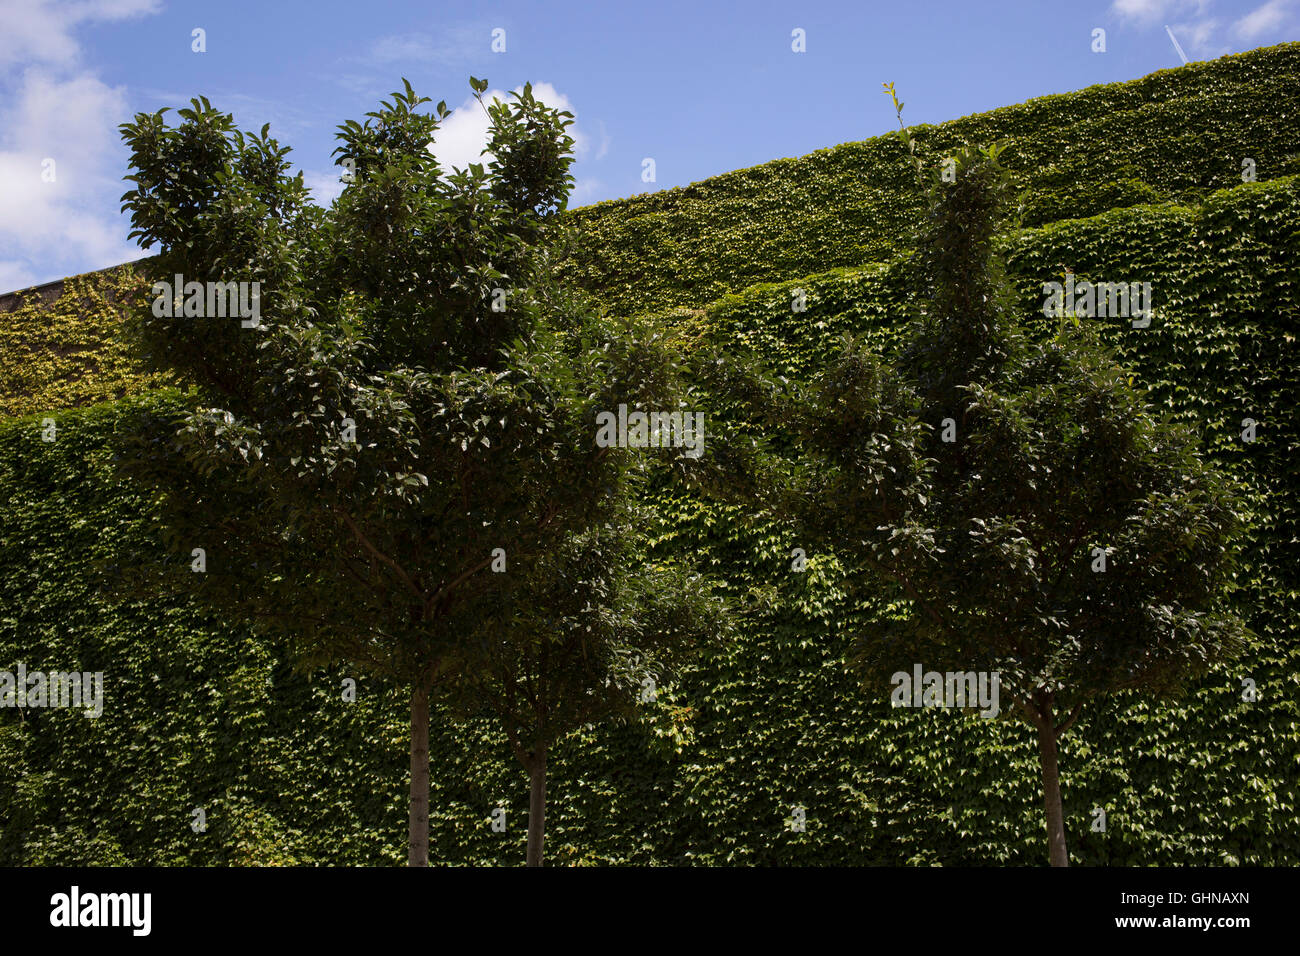 Les arbres s'harmonisent avec le célèbre mur de lierre à Horse Guards Parade à Londres, Angleterre, Royaume-Uni. Banque D'Images